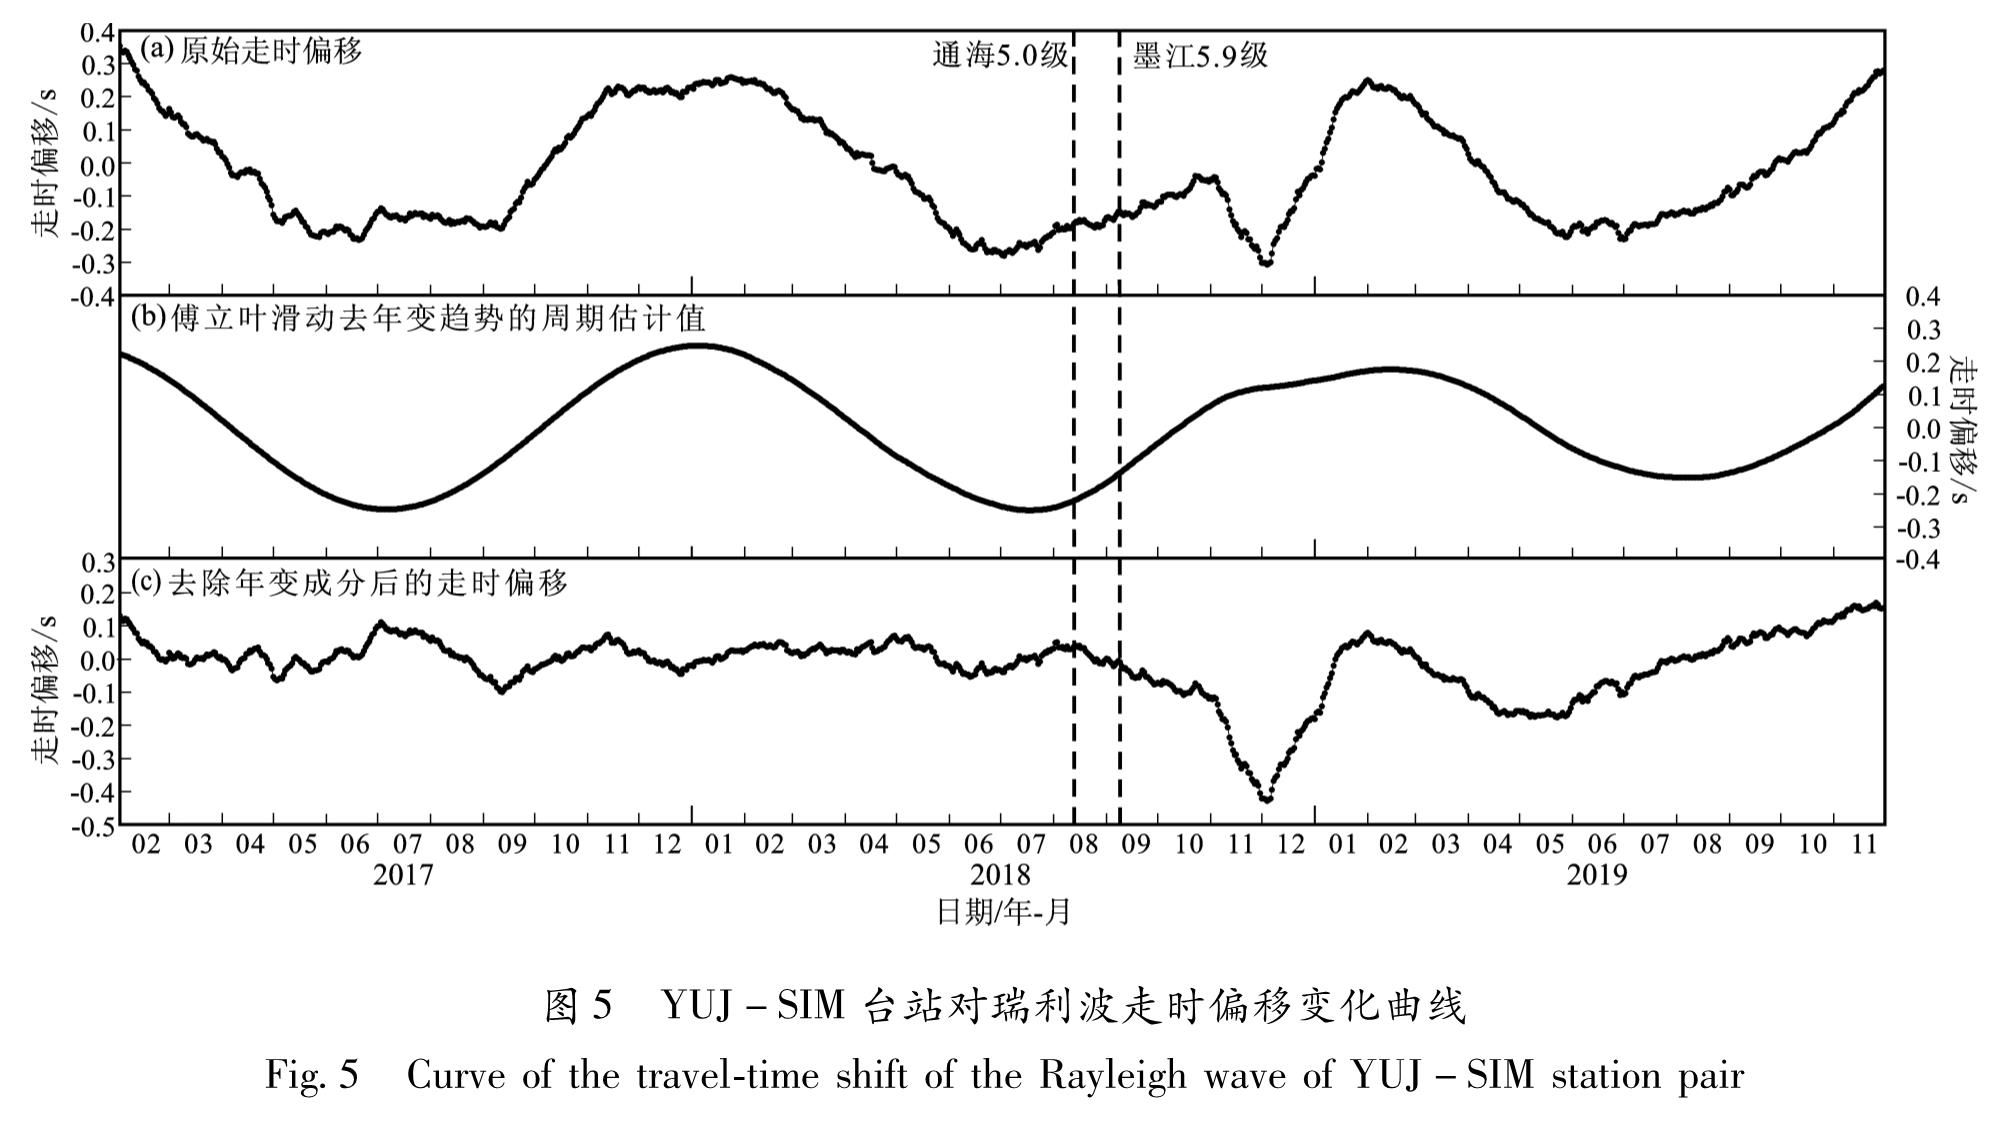 图5 YUJ-SIM台站对瑞利波走时偏移变化曲线<br/>Fig.5 Curve of the travel-time shift of the Rayleigh wave of YUJ-SIM station pair